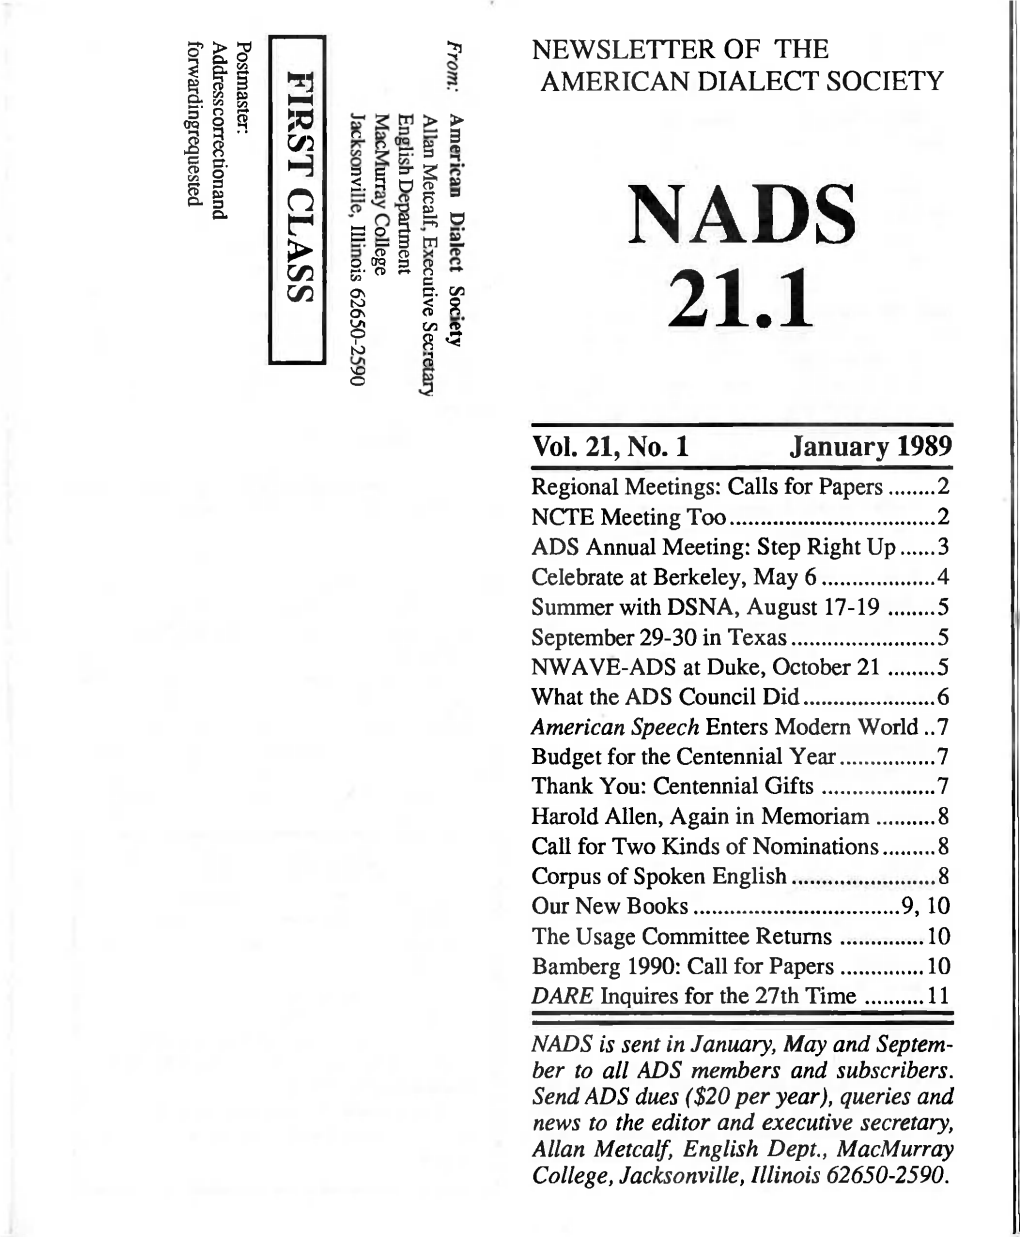 NADS.21.1 January 1989